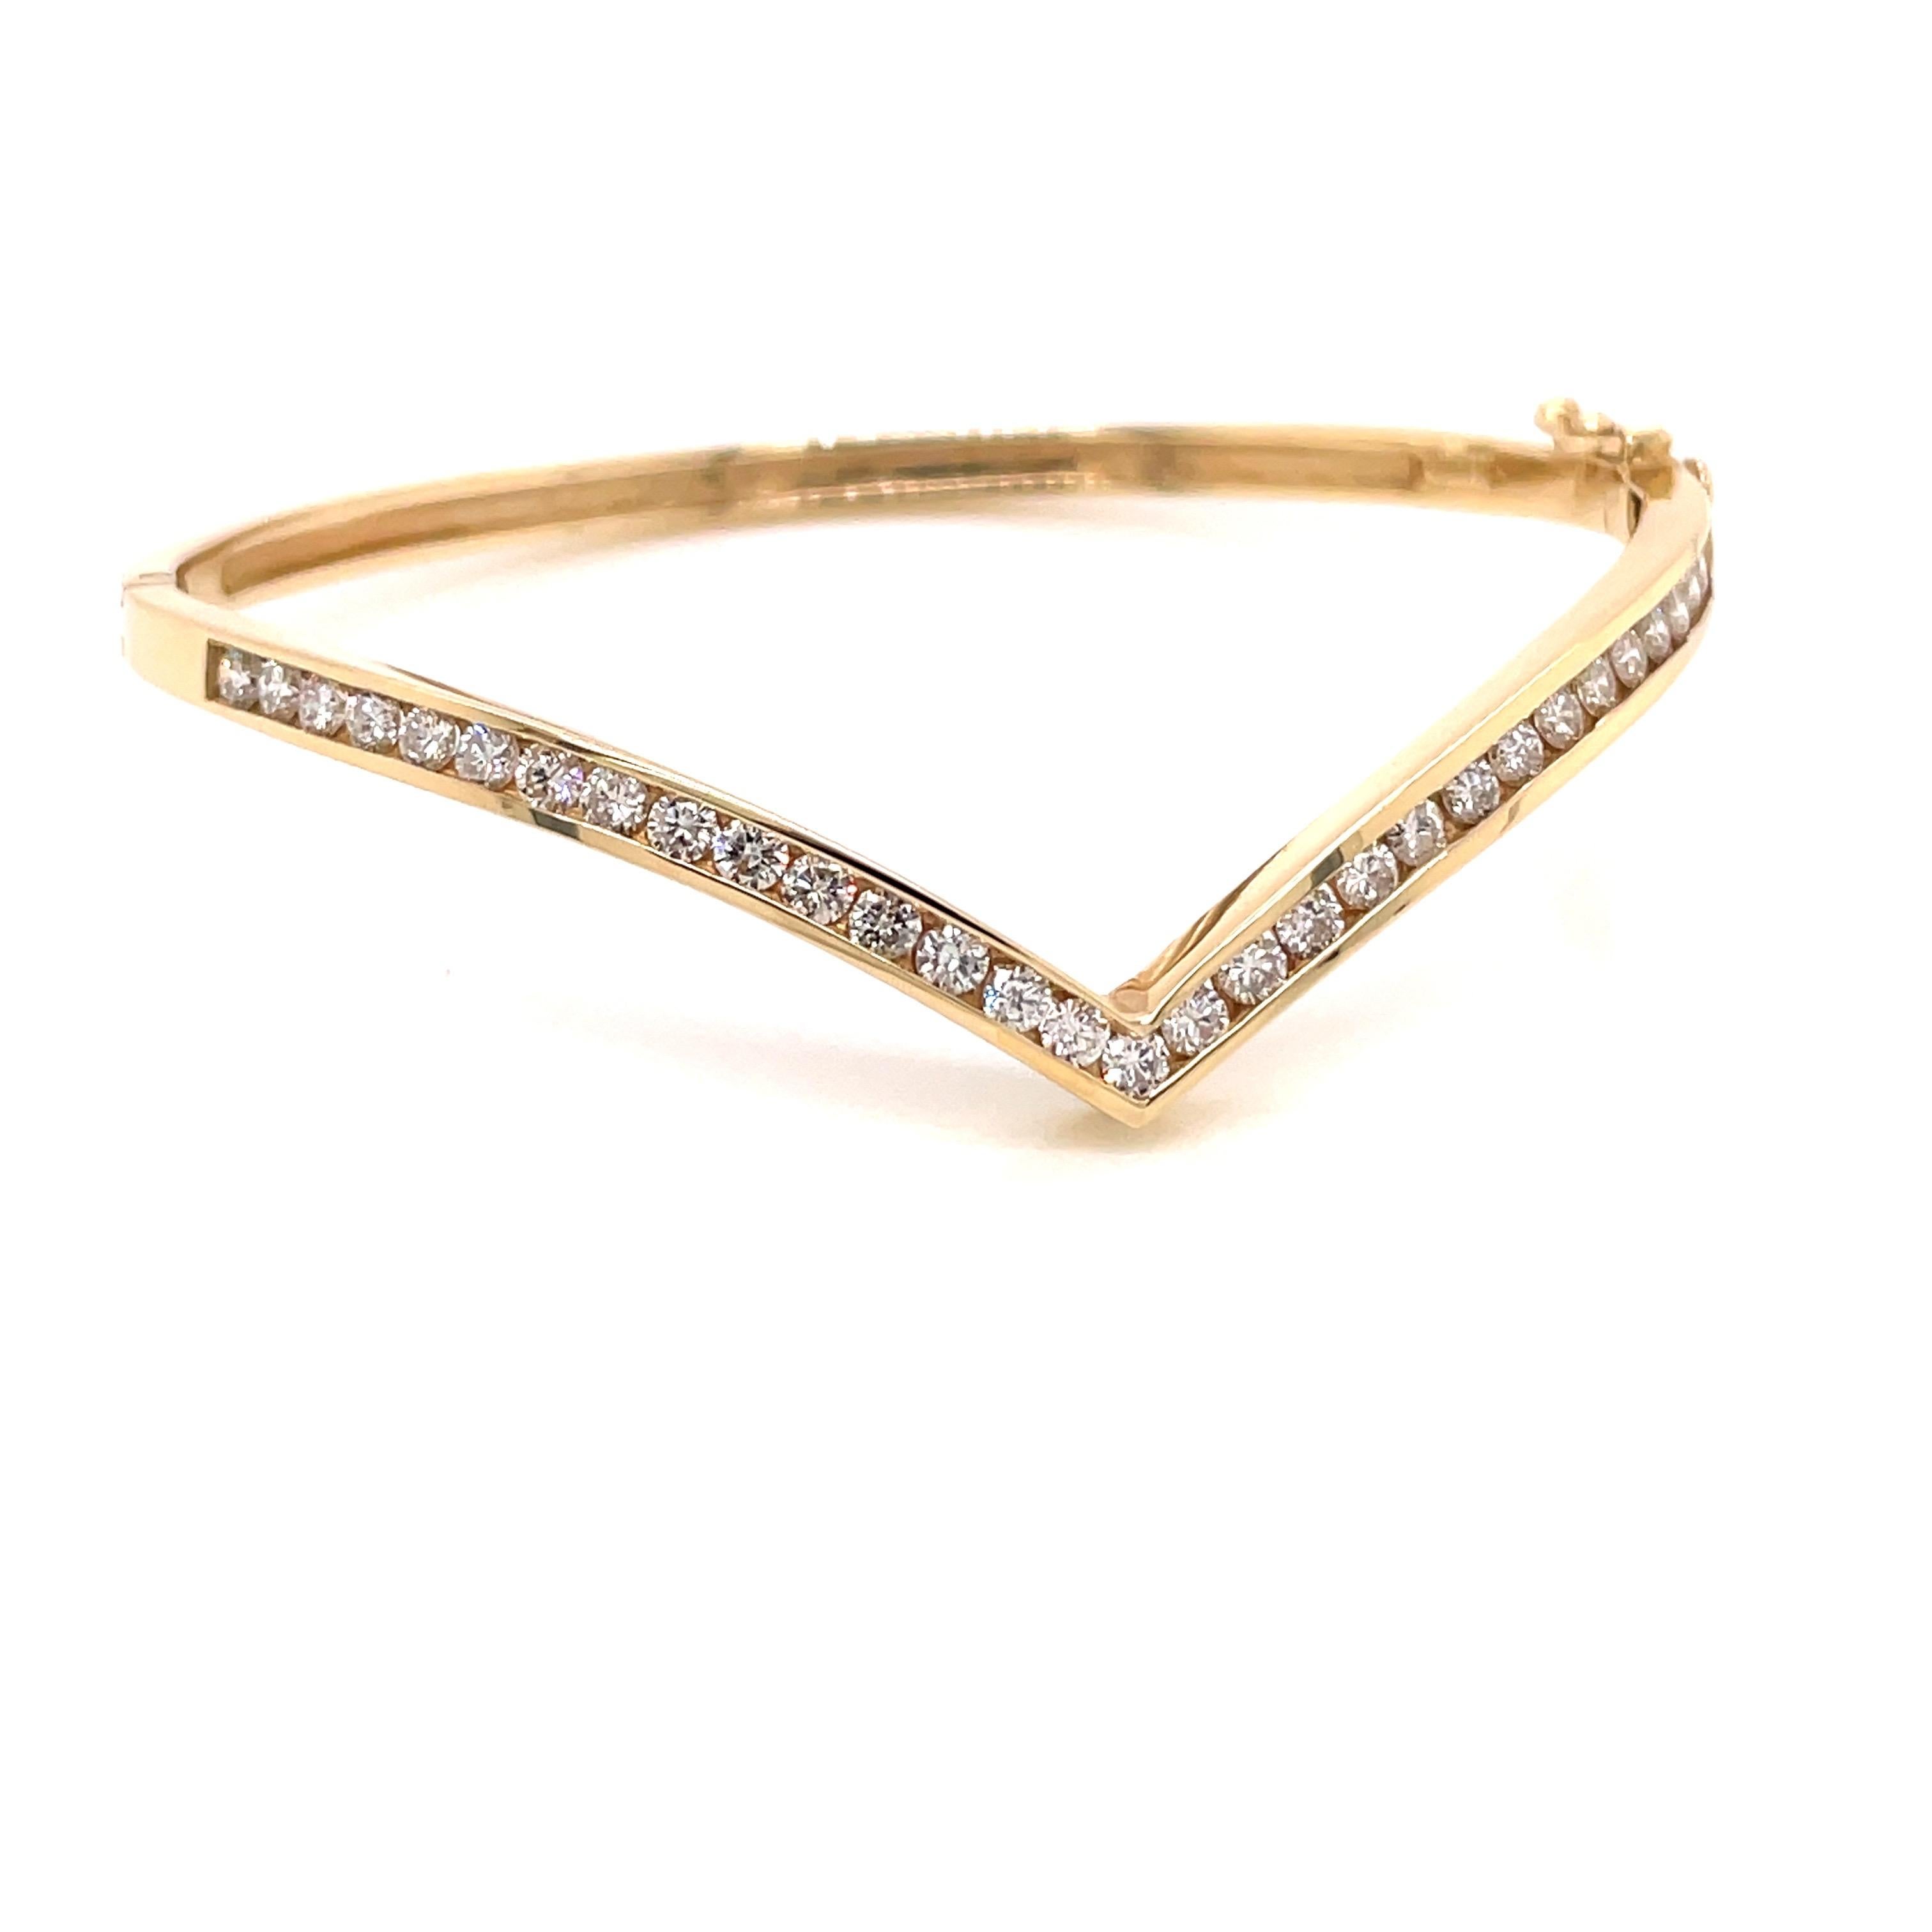 bracelet en or jaune 14K avec chevron de diamants 1.39ct - Le bracelet est serti de 31 diamants ronds de taille brillant pesant 1.39ct de couleur G - H et de pureté VS2 - SI1. La largeur du bracelet est de 3,2 mm et la pointe du chevron s'étend à